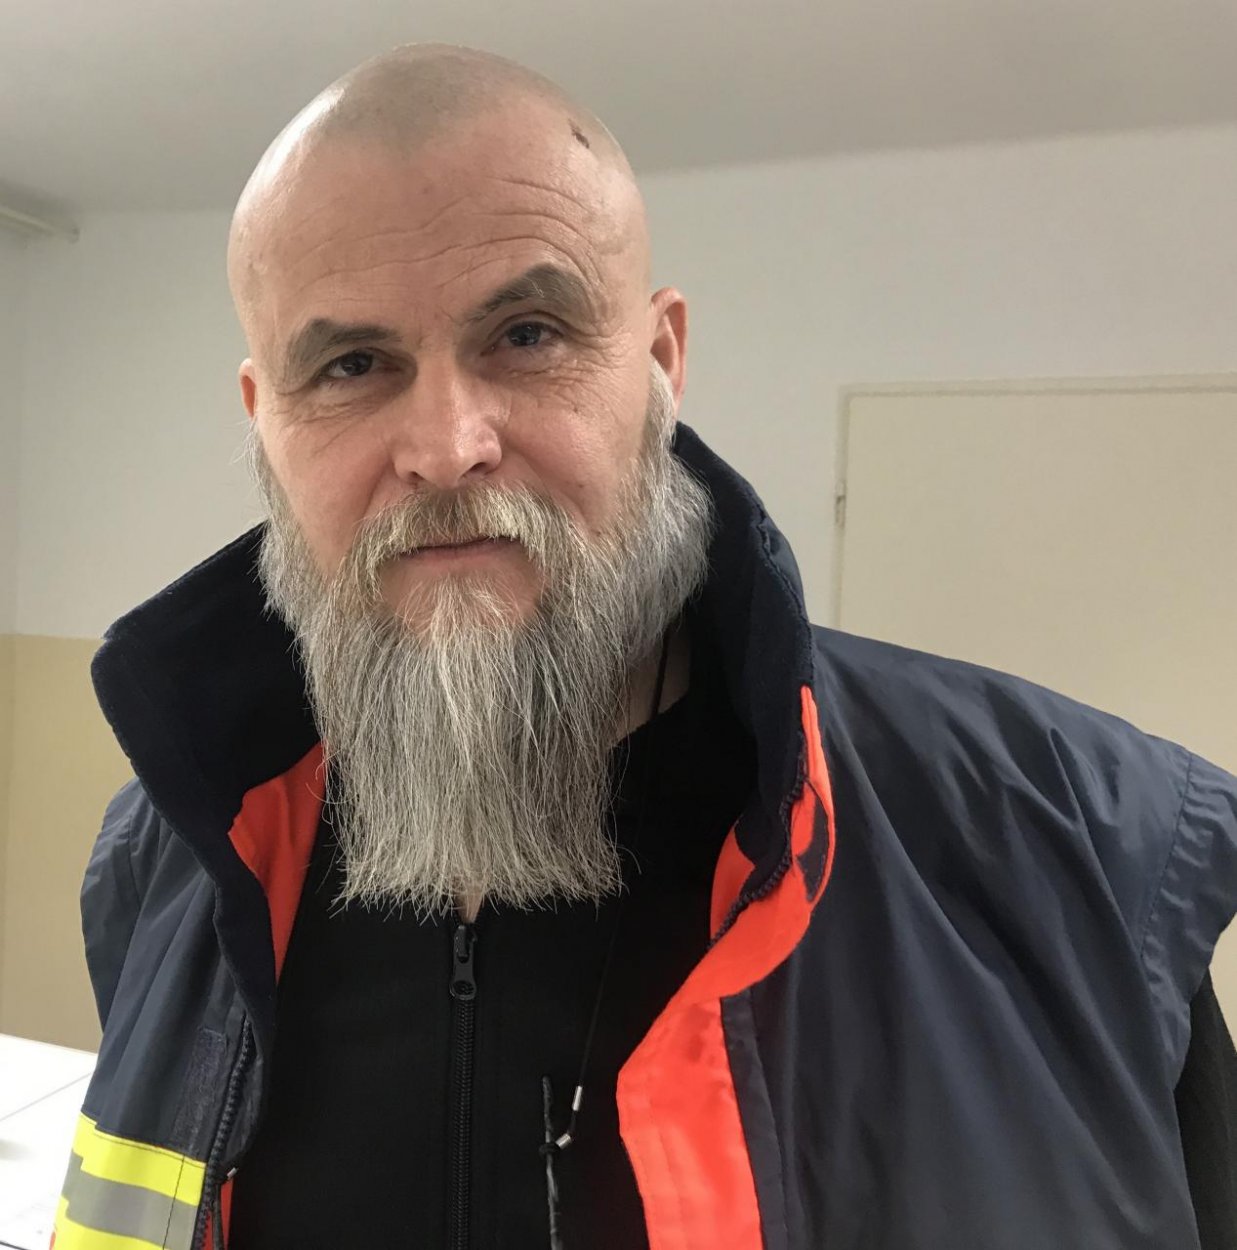 Záchranár Baláži: Prestaňme sa klamať, Slovensko je nepripravené. Hrozí nám pandémia ako v Taliansku